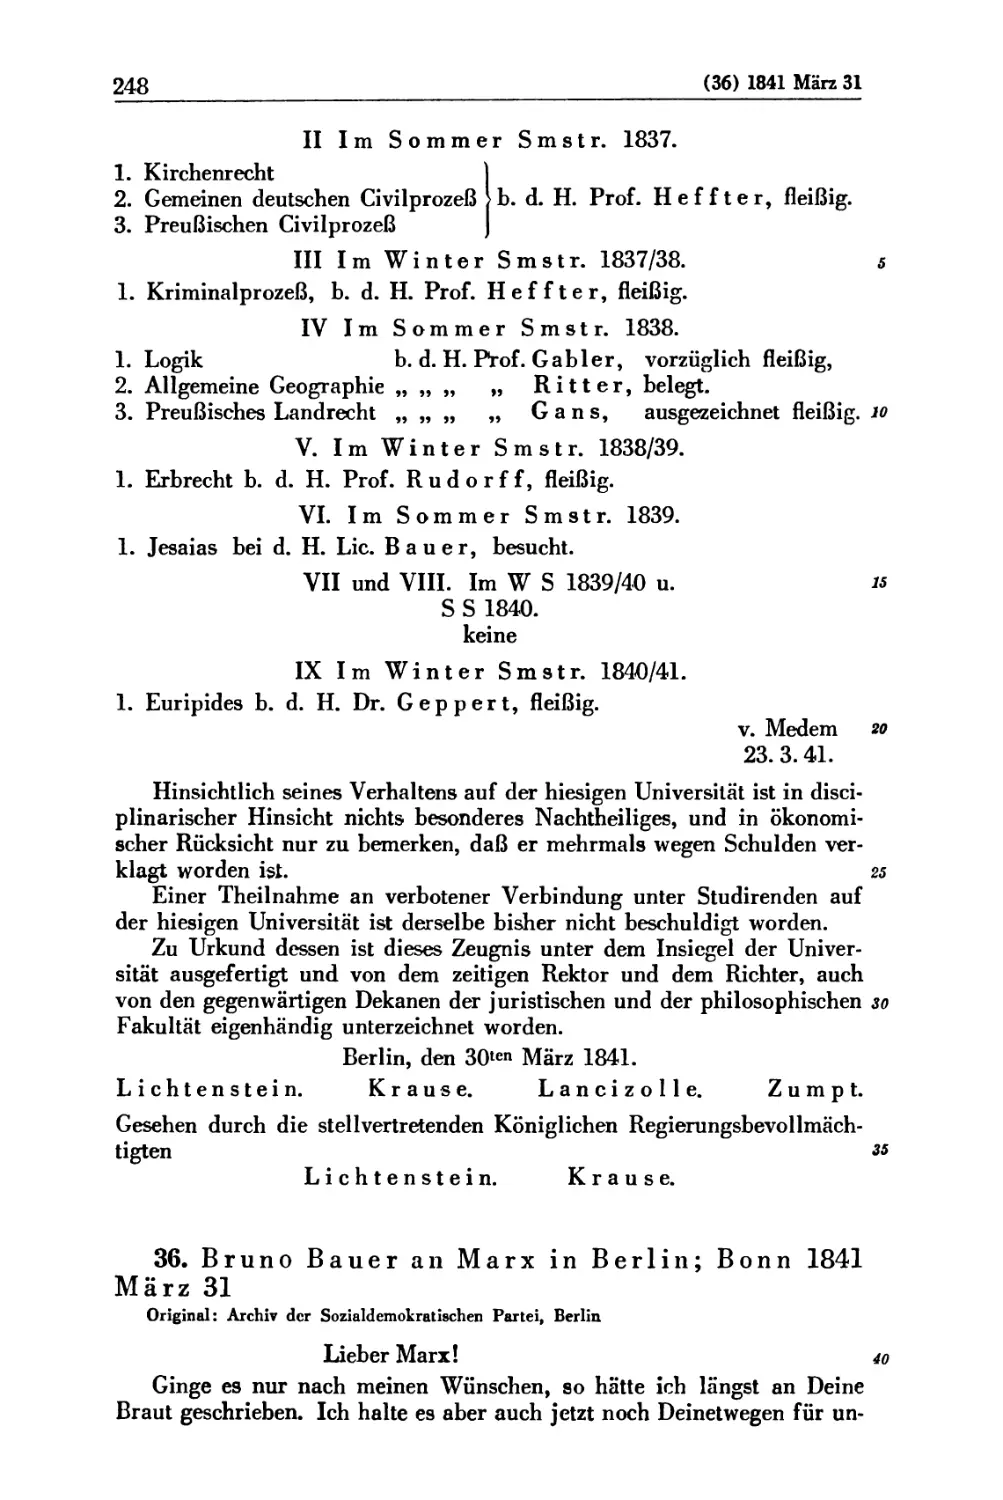 36. Bruno Bauer an Marx in Berlin; Bonn 1841 März 31